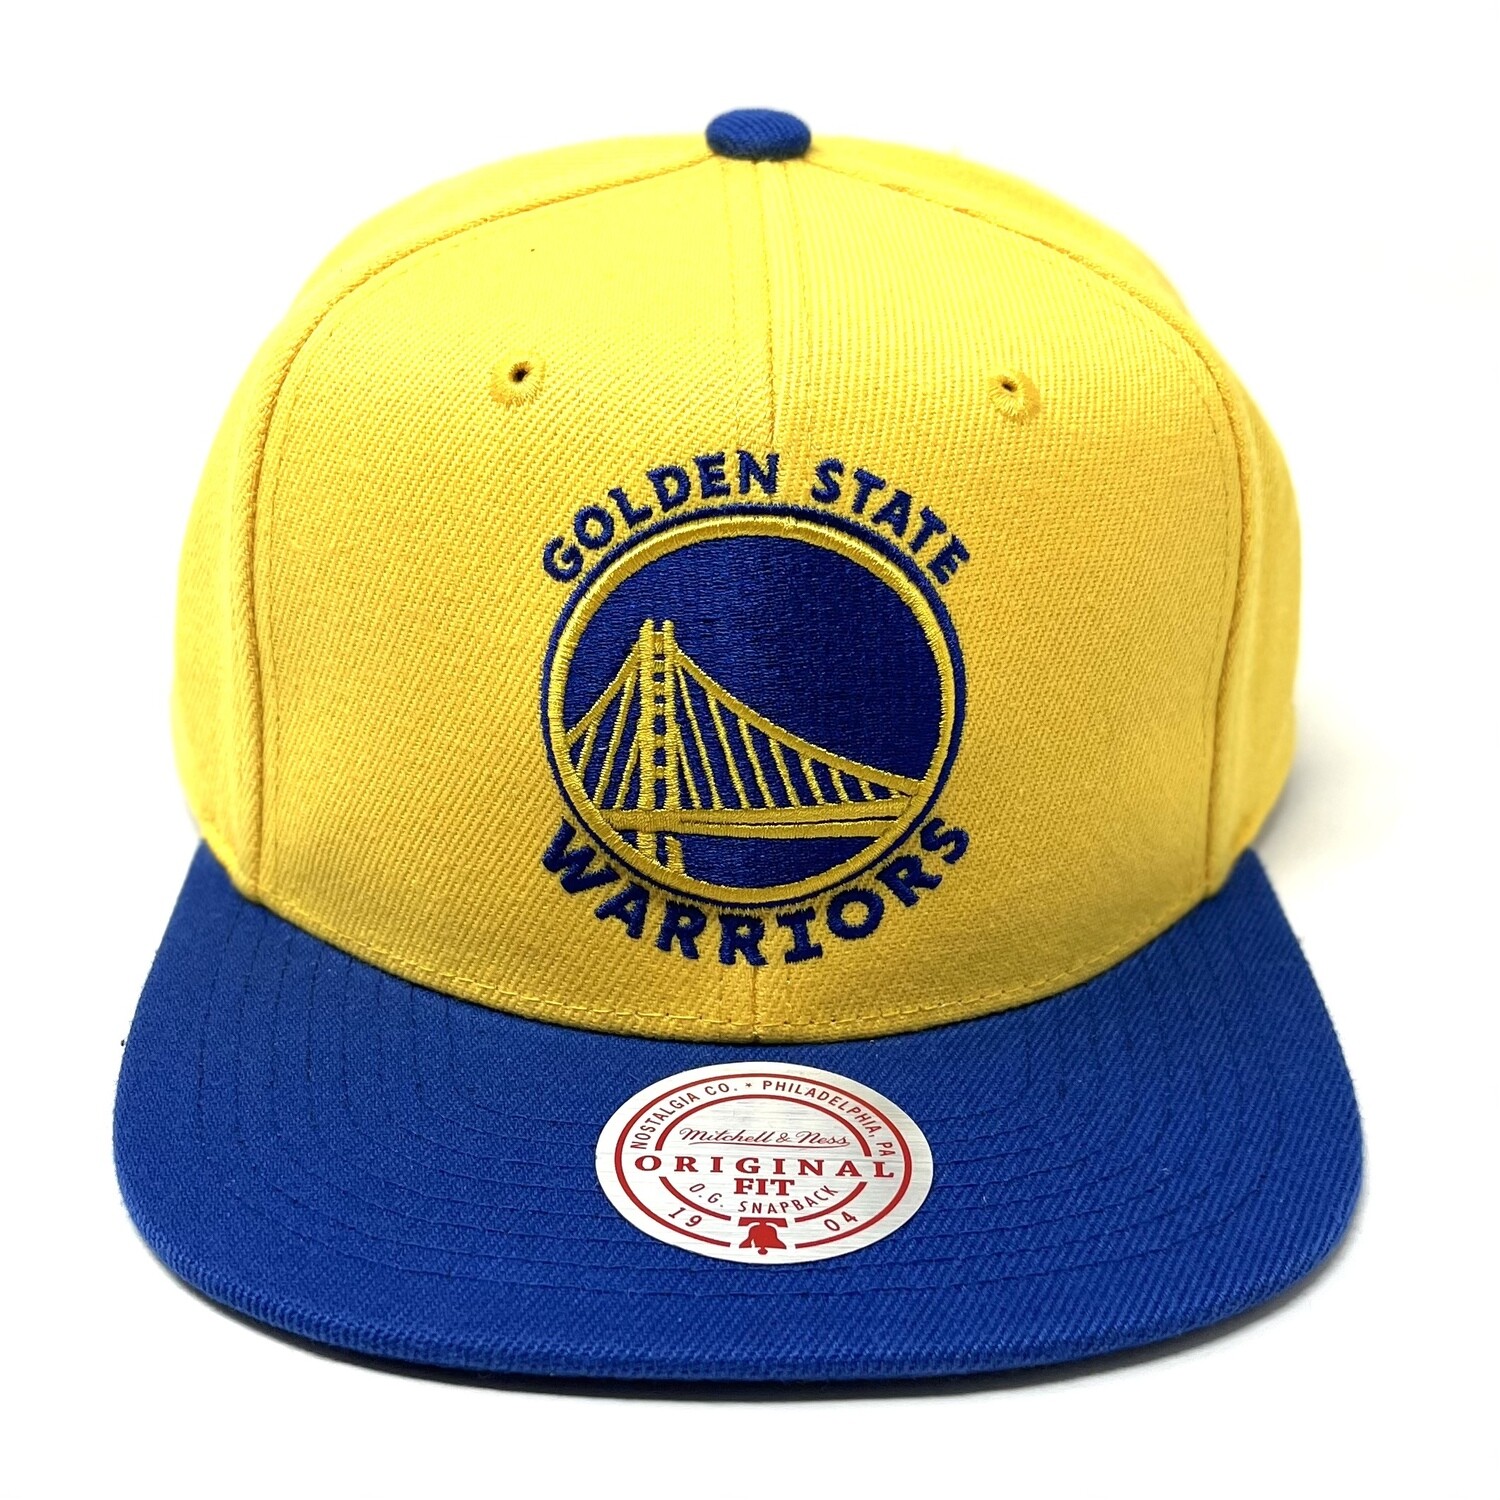 Men's Golden State Warriors Hats